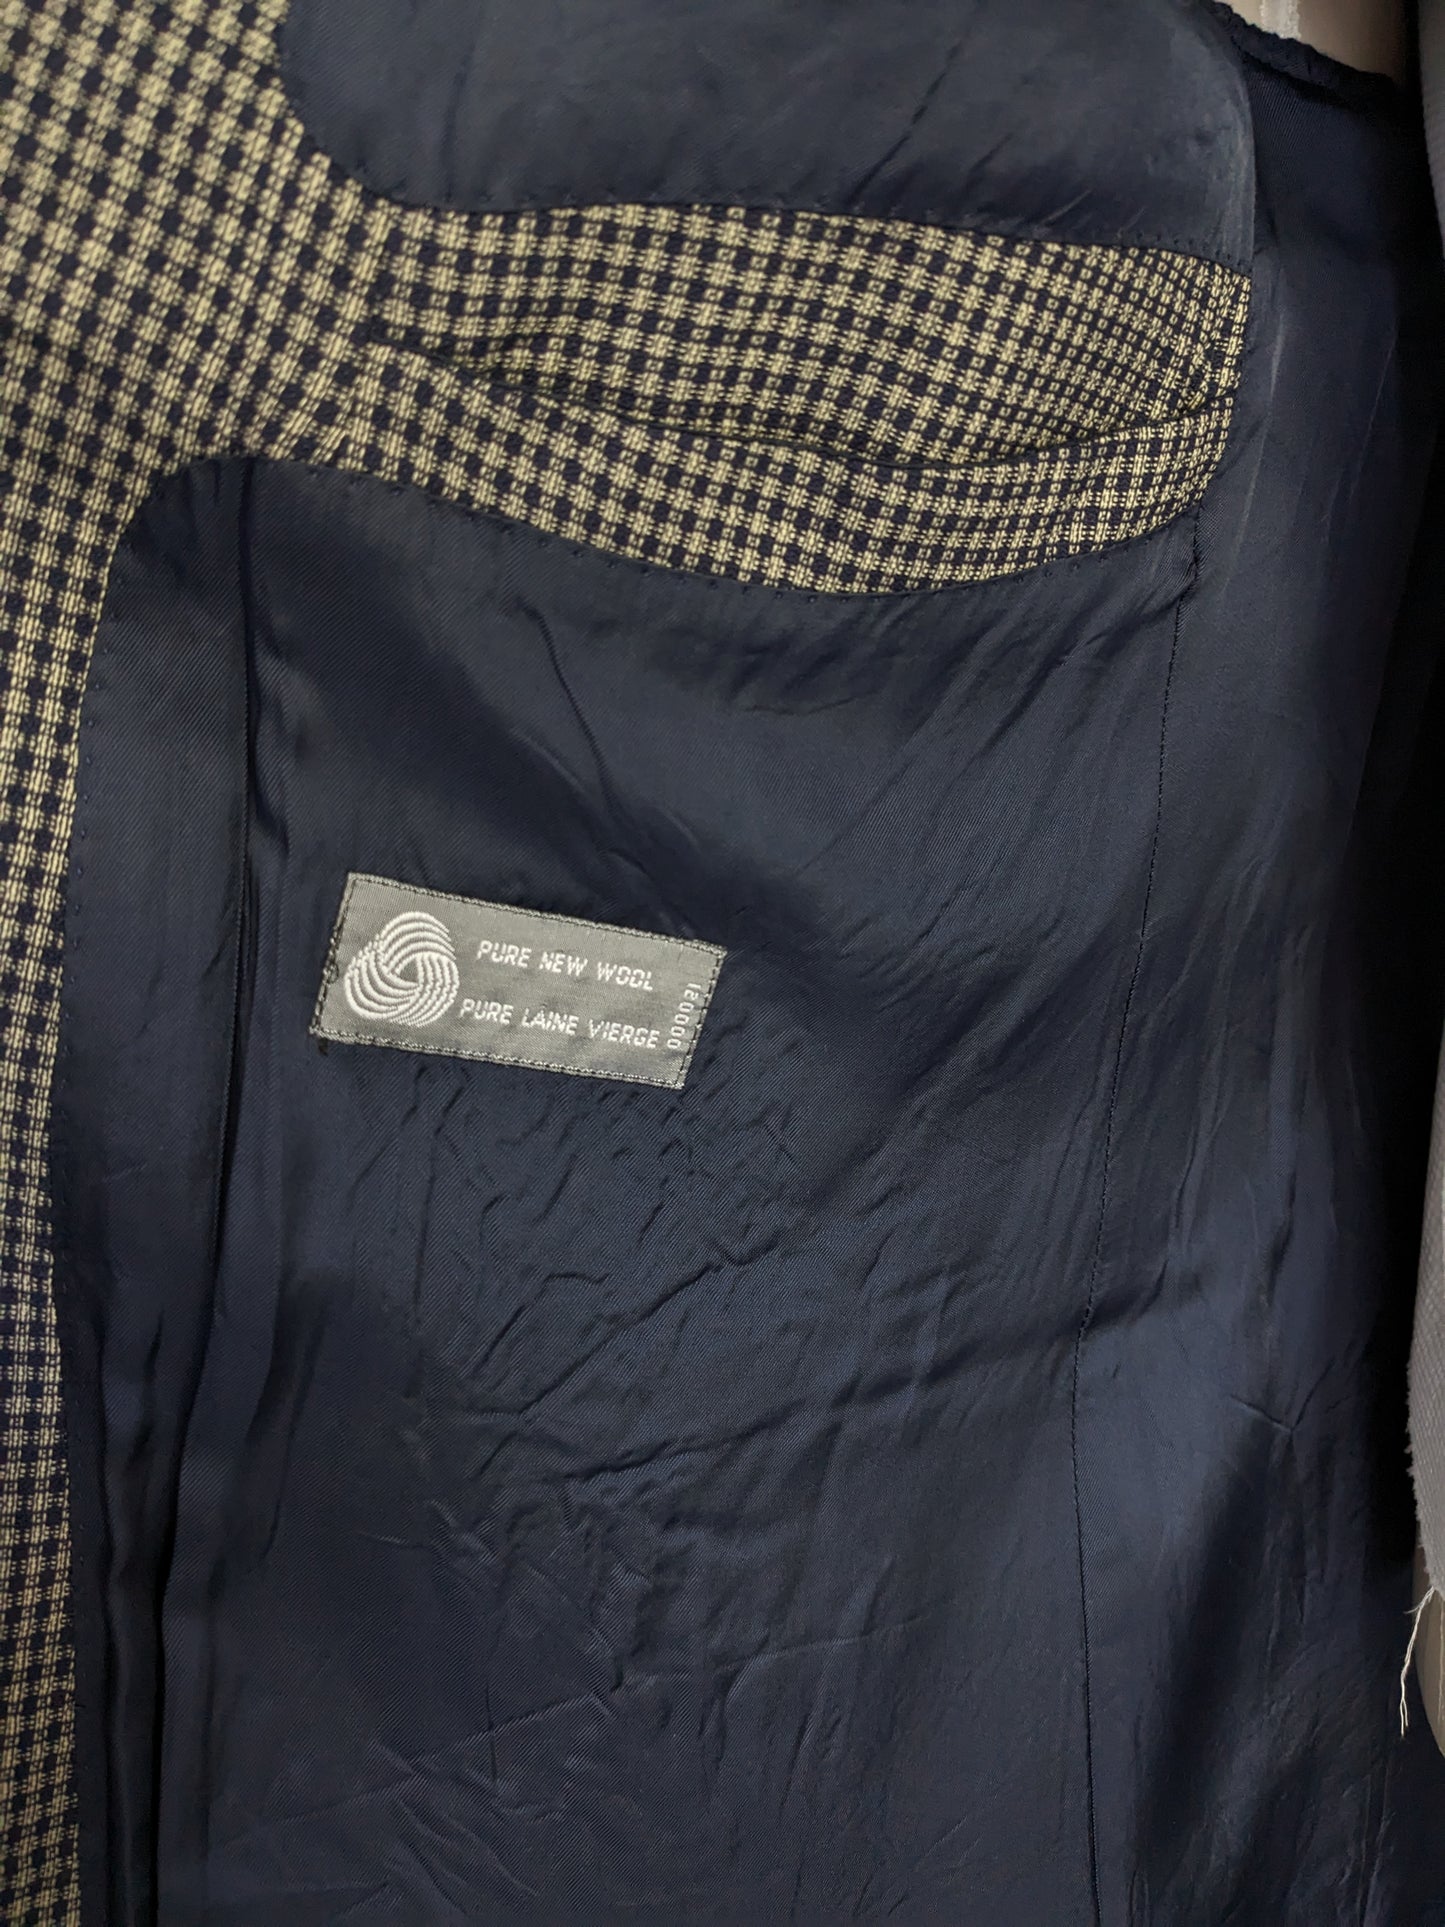 Van Gils Vintage Double Breasted Woolle mit Punktemanien. Graublau überprüft. Größe 54 / L.